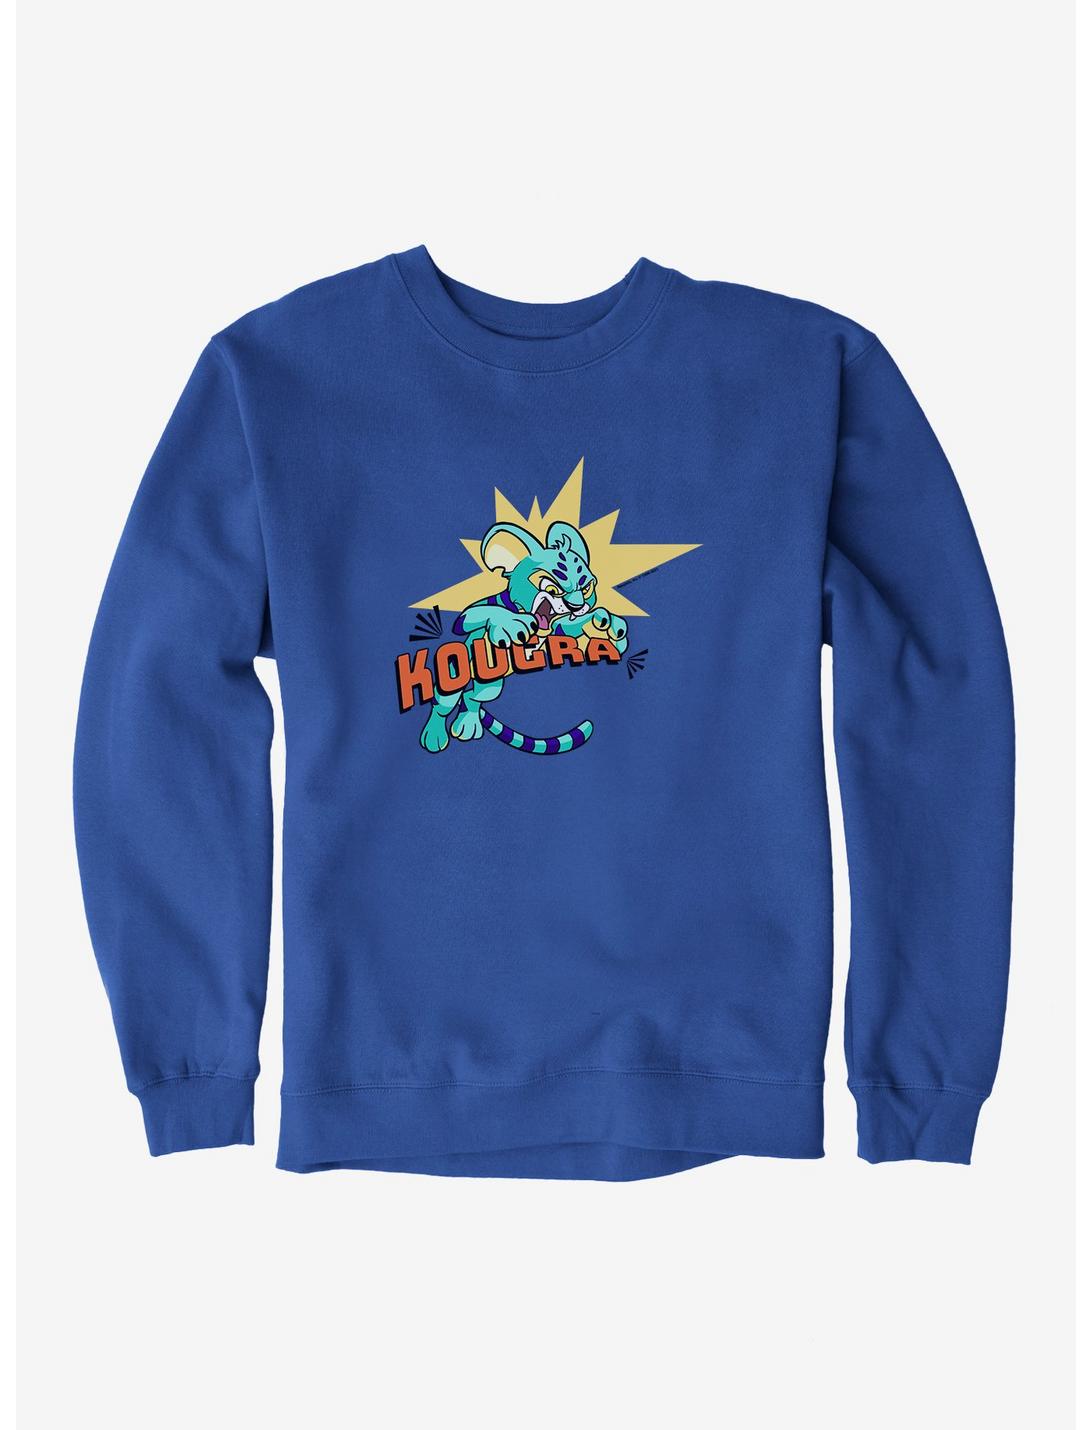 Neopets Kougra Sweatshirt, ROYAL BLUE, hi-res